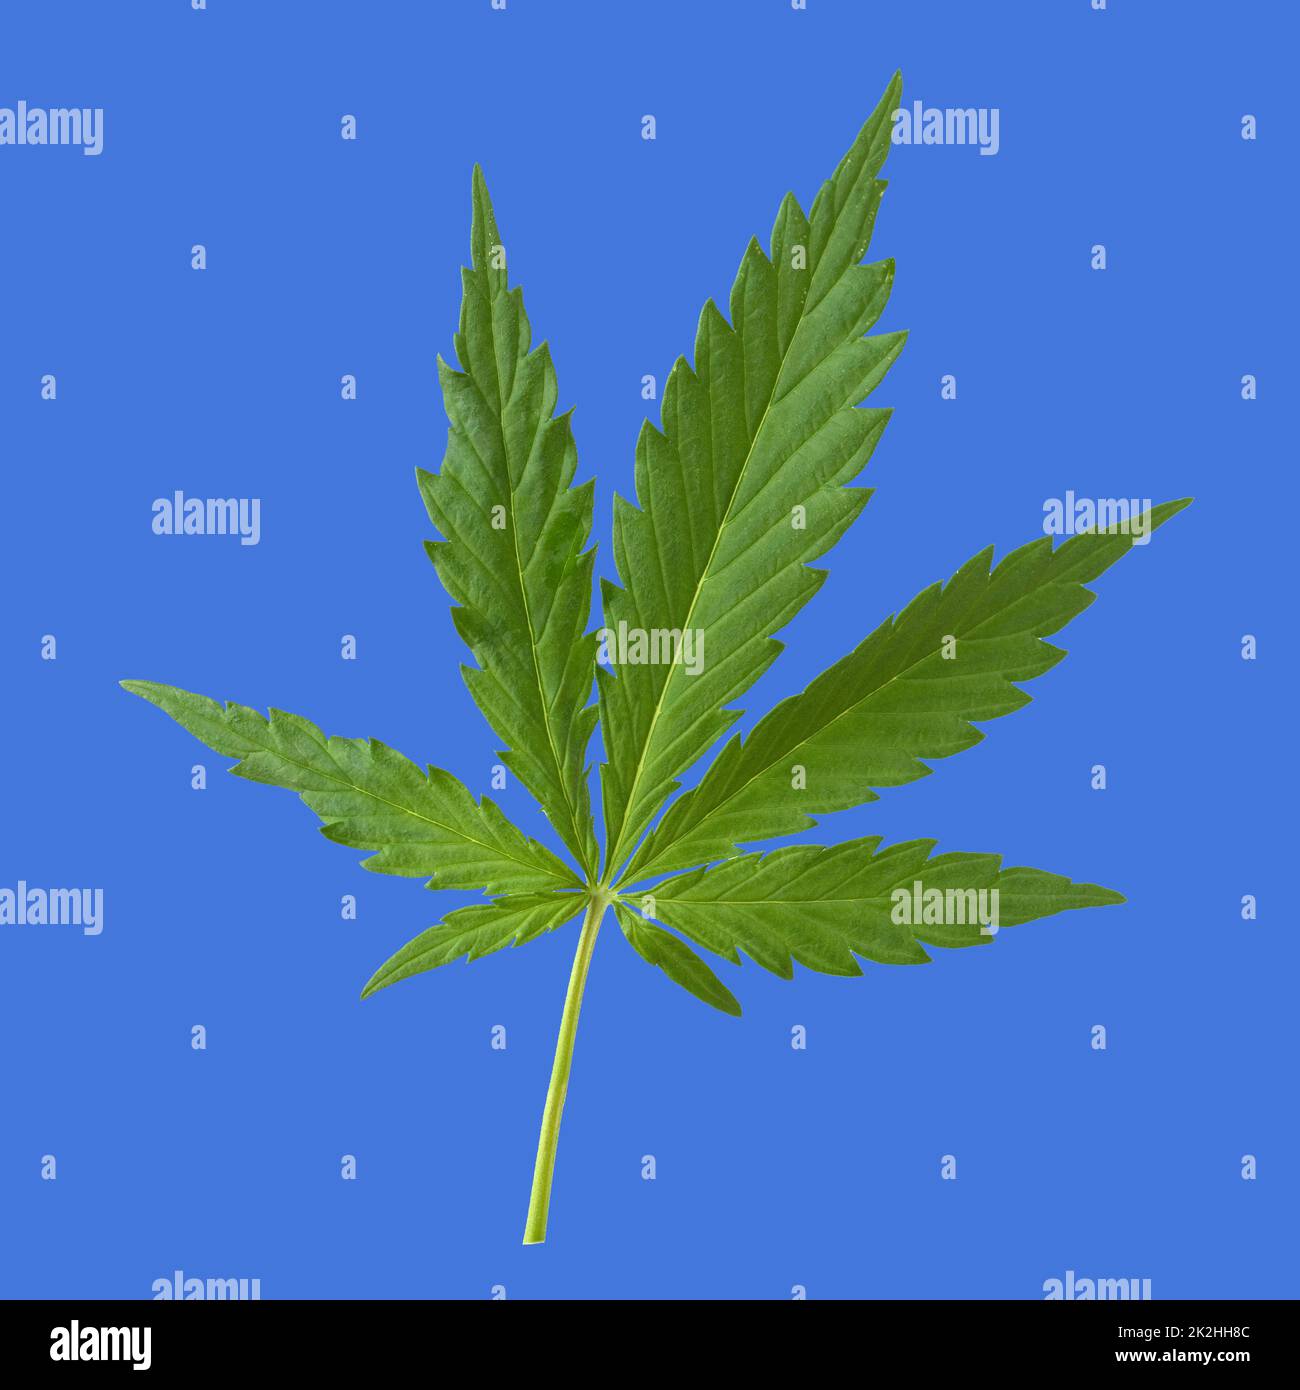 Hanf, Cannabis indica ist eine Nutz- und Rauschgiftpflanze die auch in der Medzin eingesetzt wird. Hanf, Cannabis Indica ist ein nützlicher und narkotischer Plan Stockfoto